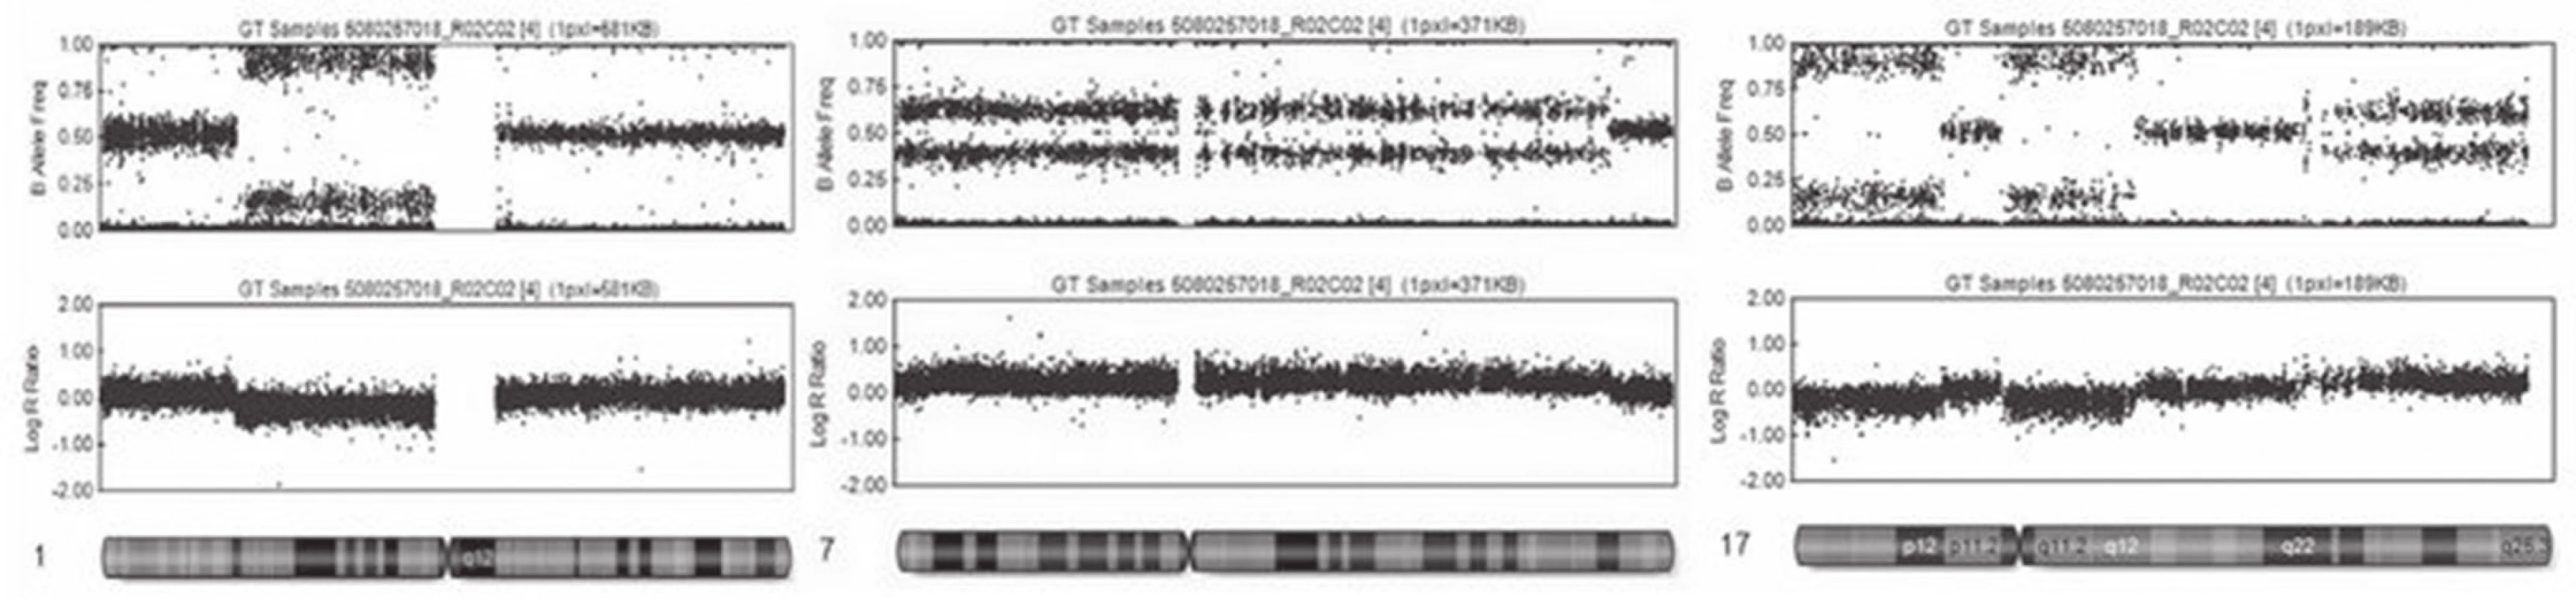 Výsledky vyšetření SNP array. Horní řádek udává B alelické rozložení, dolní řádek pak intenzitu fluorescence. V levé části je patrná delece části krátkých ramének prvního chromozómu. Uprostřed je ukázka zmnožení velké části 7. chromozómu a napravo komplexní změna 17. chromozómu, kde na krátkých raméncích 17. chromozómu nalézáme dva úseky s delecí, a naopak část dlouhých ramének 17. chromozómu, má zmnožení genetického materiálu.